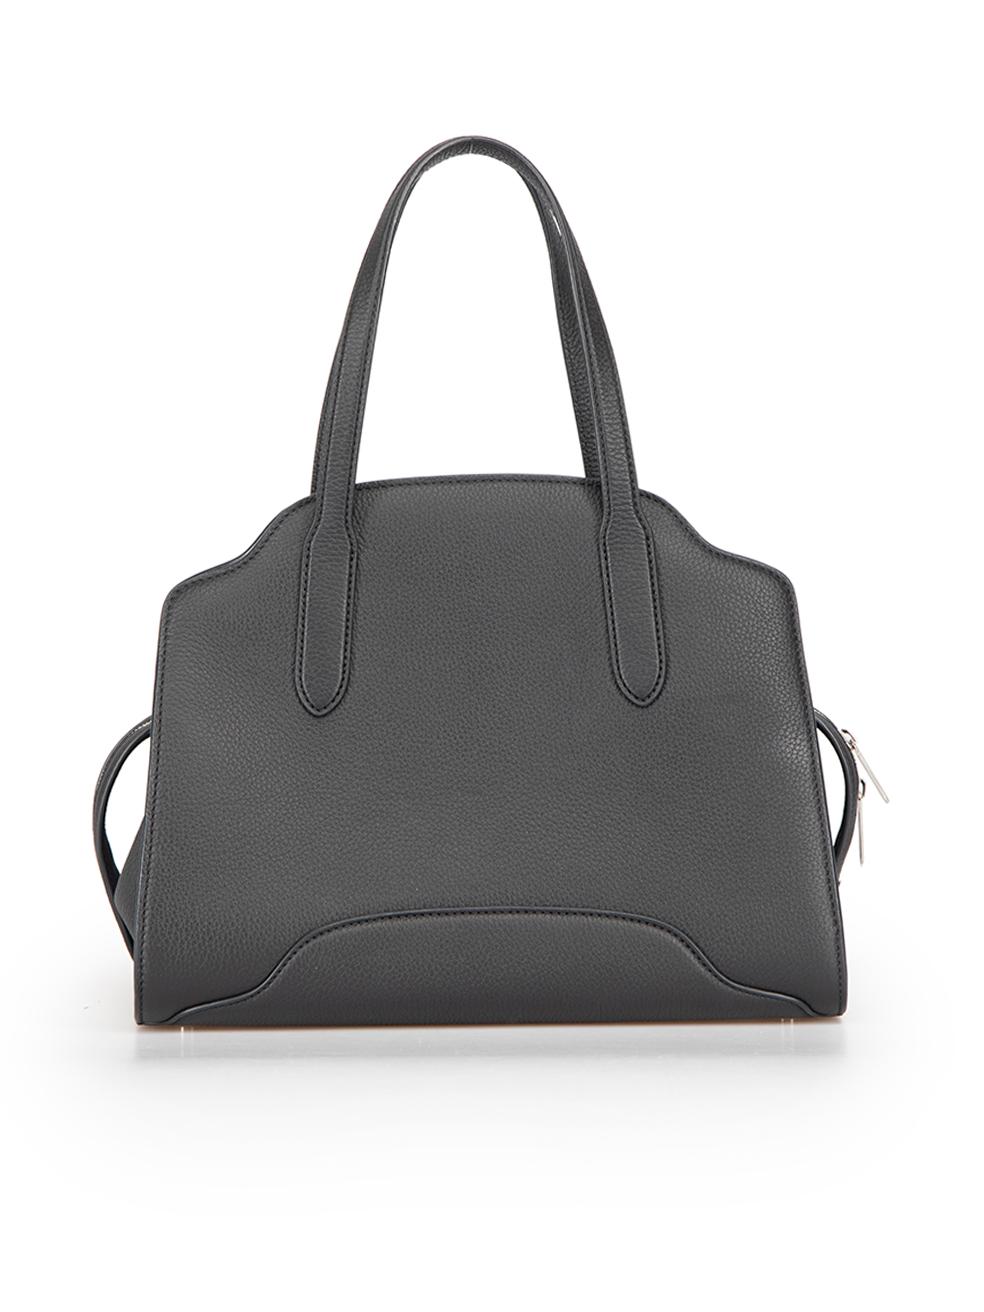 Loro Piana Black Leather Micro Sesia Handbag In Excellent Condition In London, GB